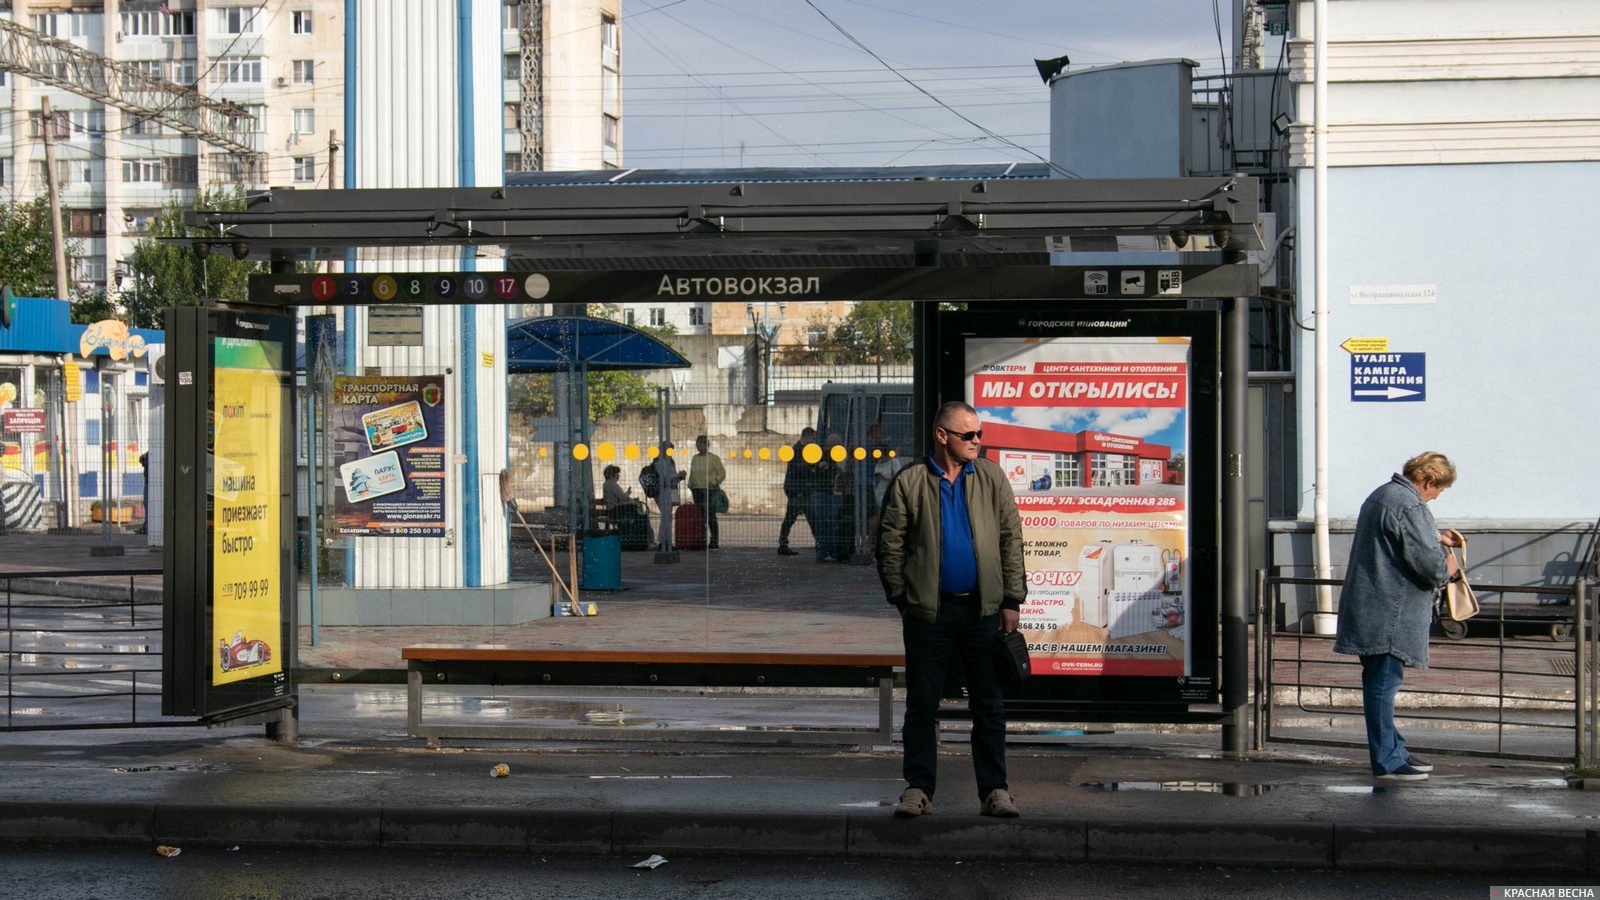 Остановка общественного транспорта Автовокзал. Евпатория, Крым